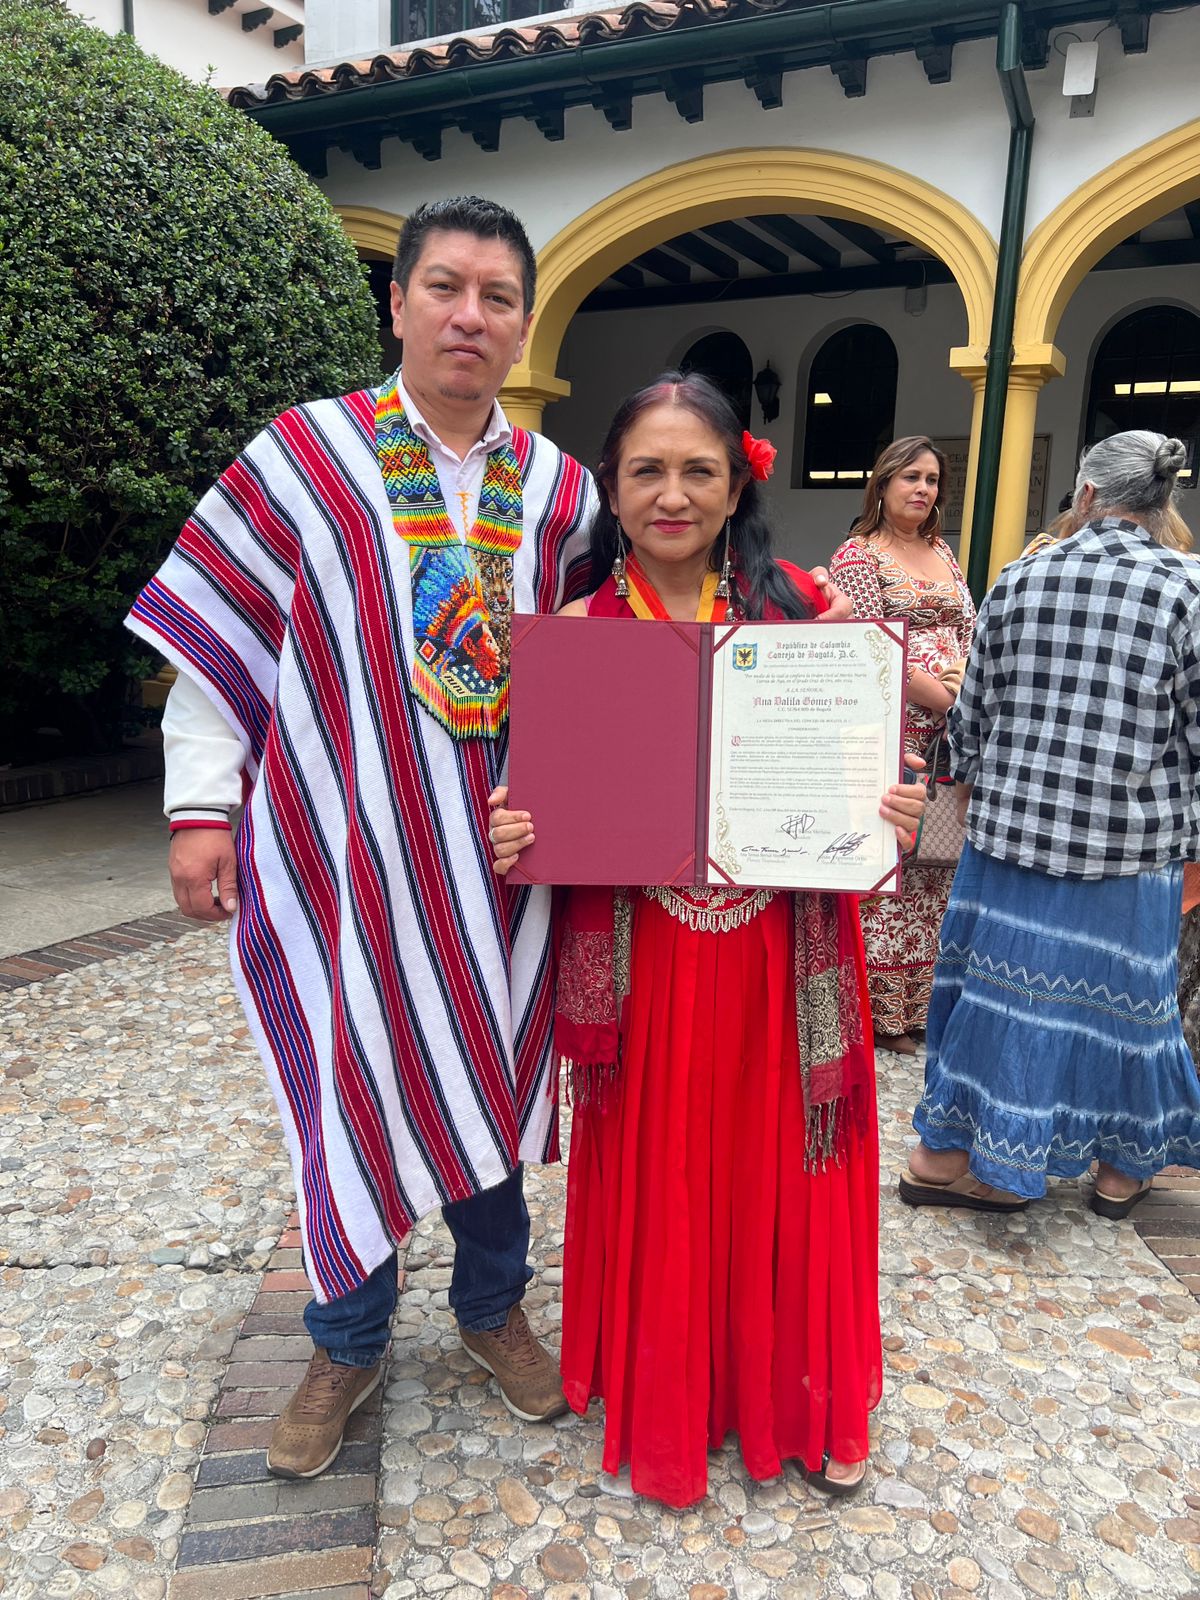 en esta fotografía el concejal Bastidas acompañado de Leidy Johana Agreda Chasoy en la plazoleta principal del conecejo de Bogotá